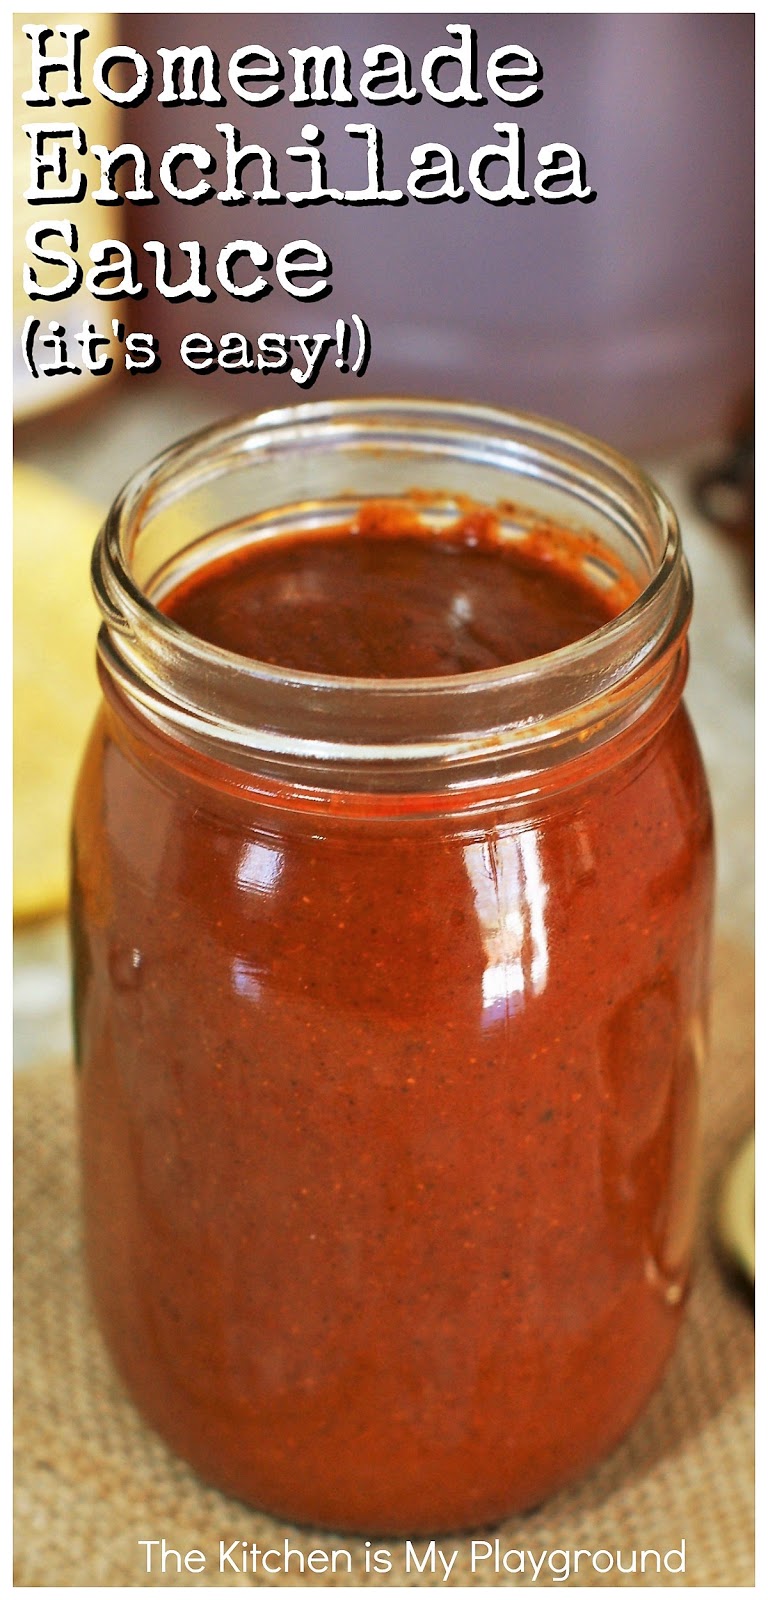 Easy Homemade Blender Enchilada Sauce